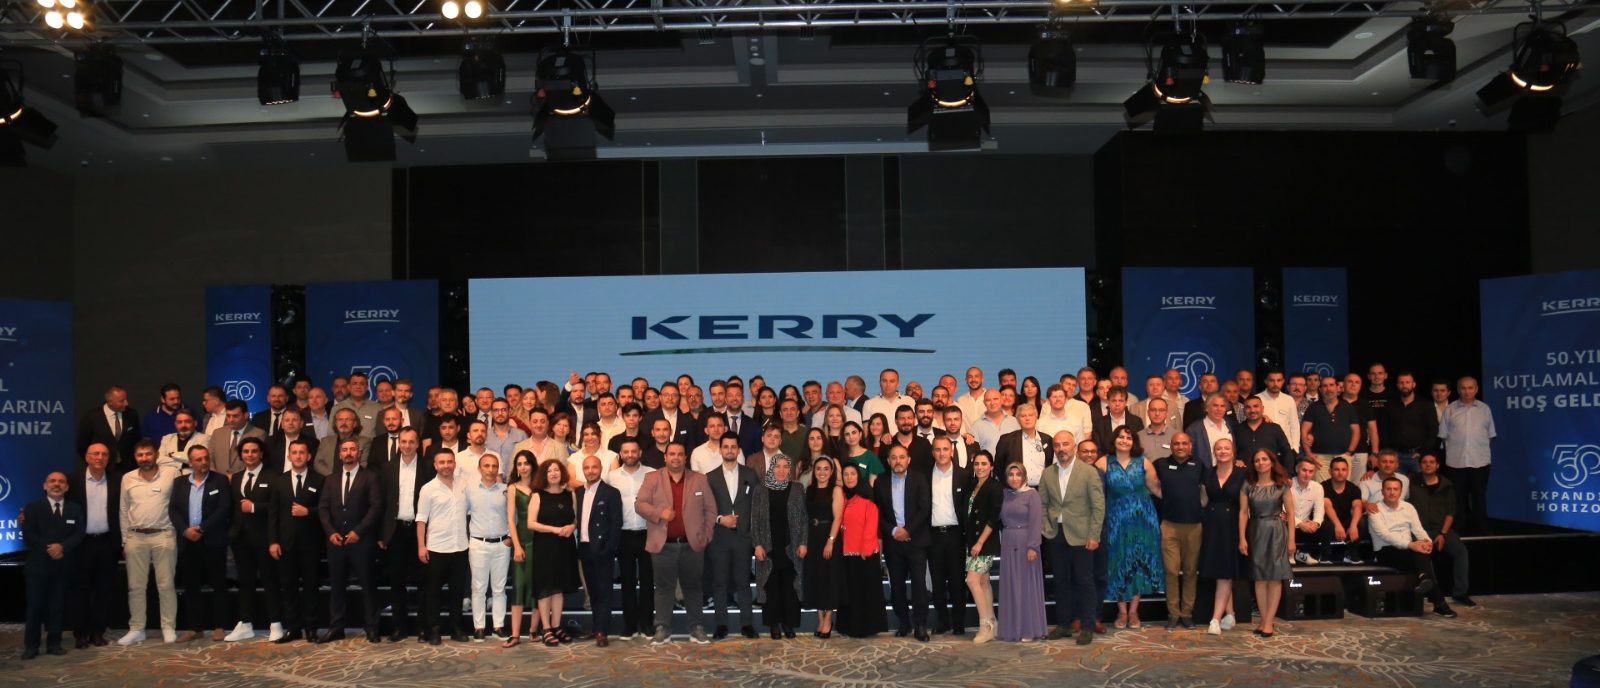 Kerry Group, 50. yılını yeni yatırım hedefleriyle kutluyor